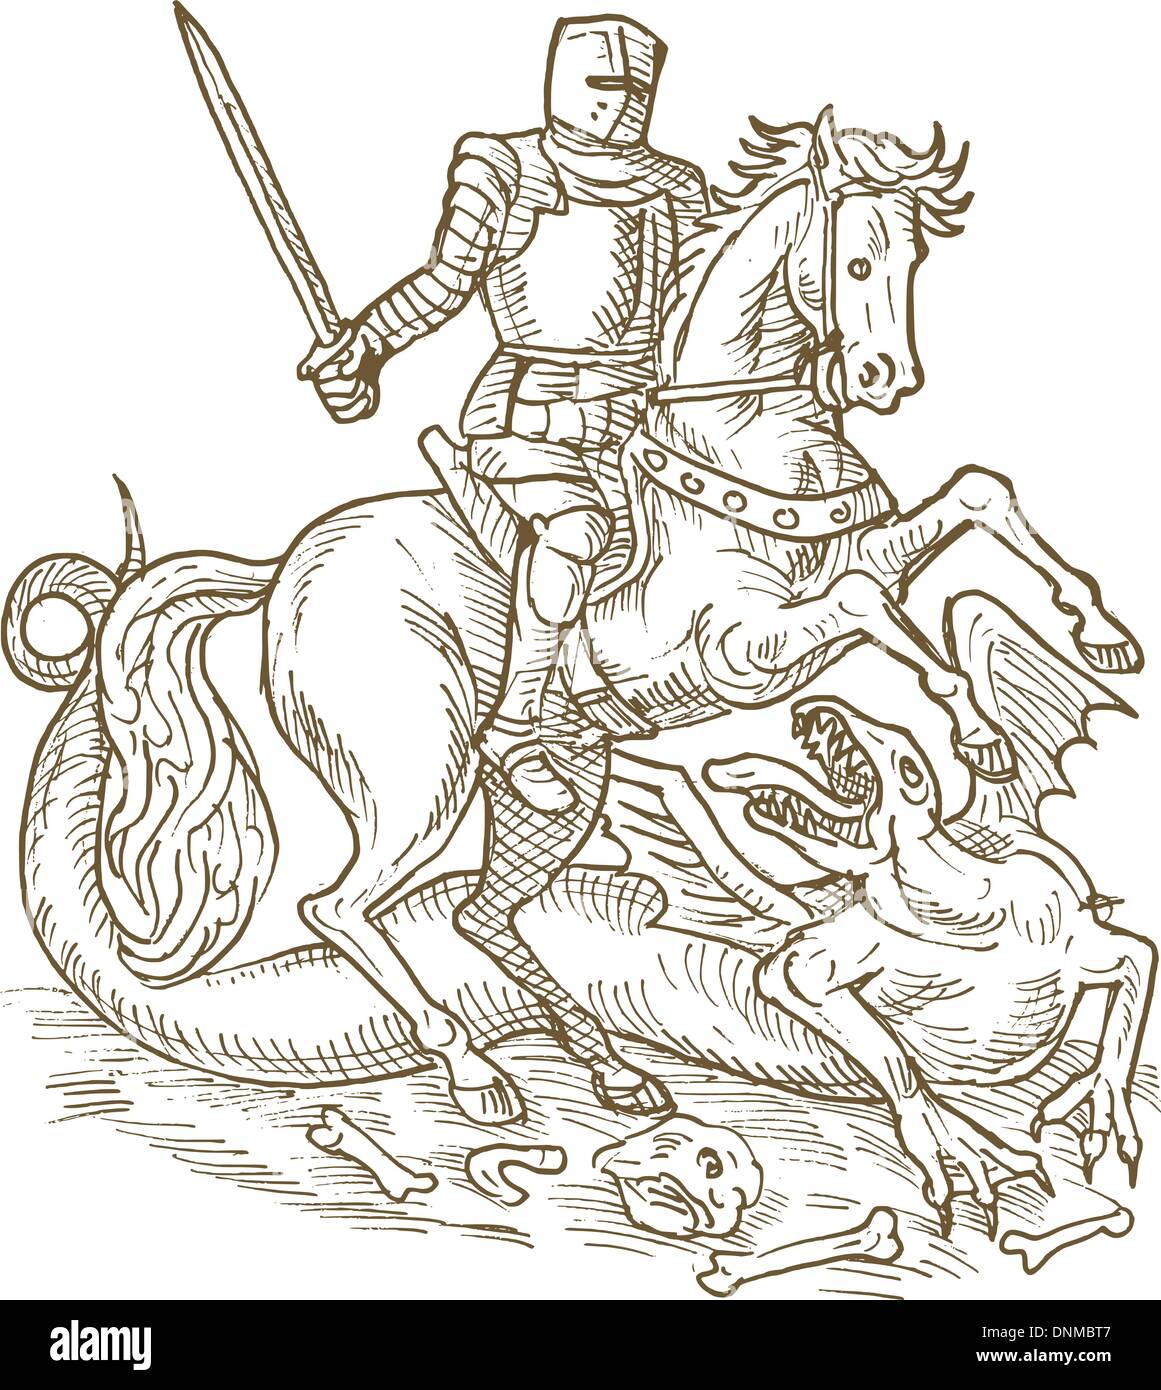 Dessin de Saint George et le dragon knight fait en noir et blanc Illustration de Vecteur